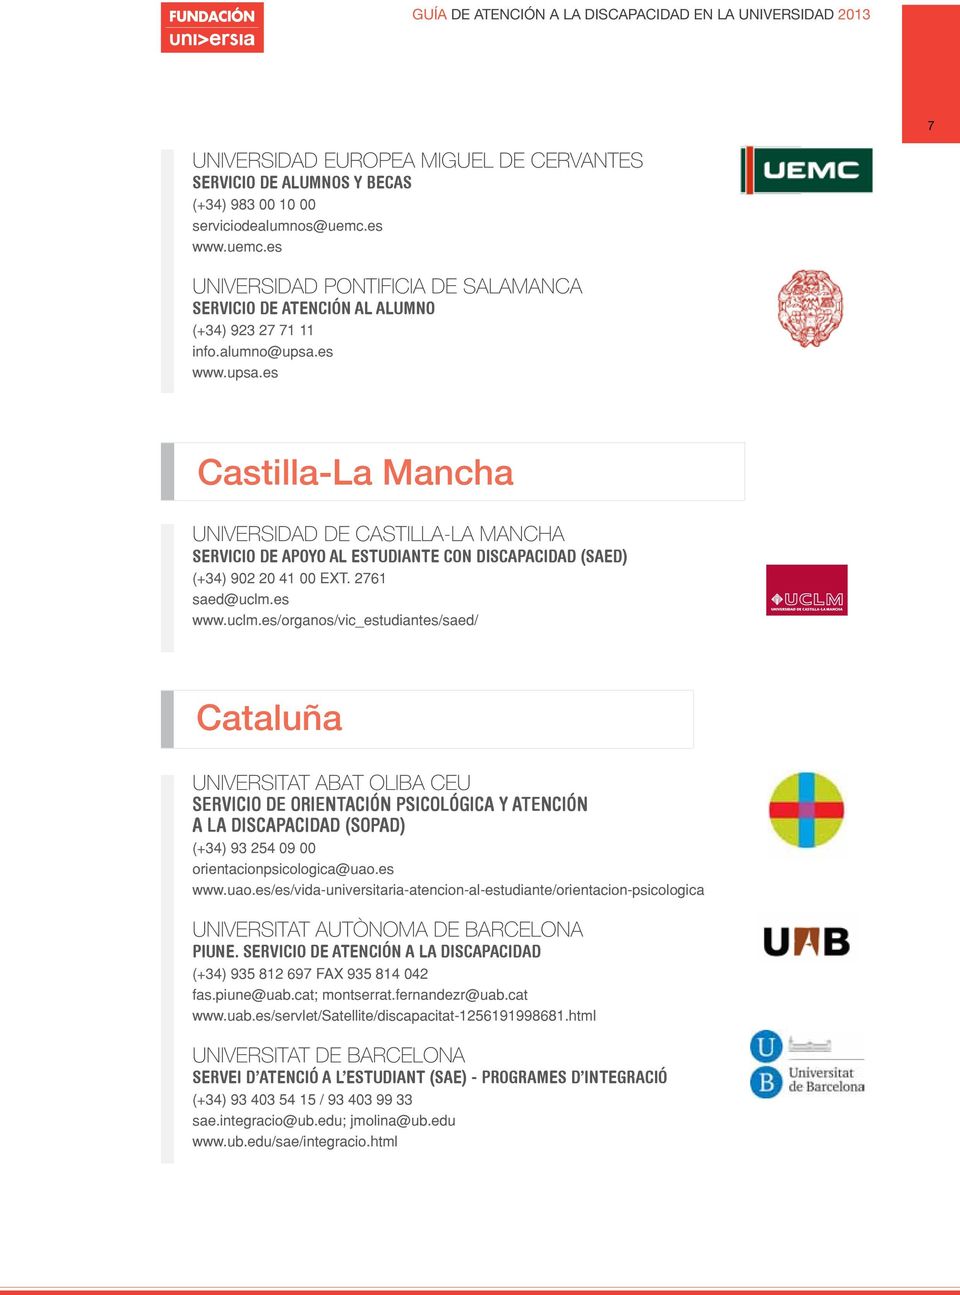 es www.psa.es Castilla-La Mancha UNIVERSIDAD DE CASTILLA-LA MANCHA servicio de apoyo al estdiante con discapacidad (saed) (+34) 902 20 41 00 ext. 2761 saed@clm.